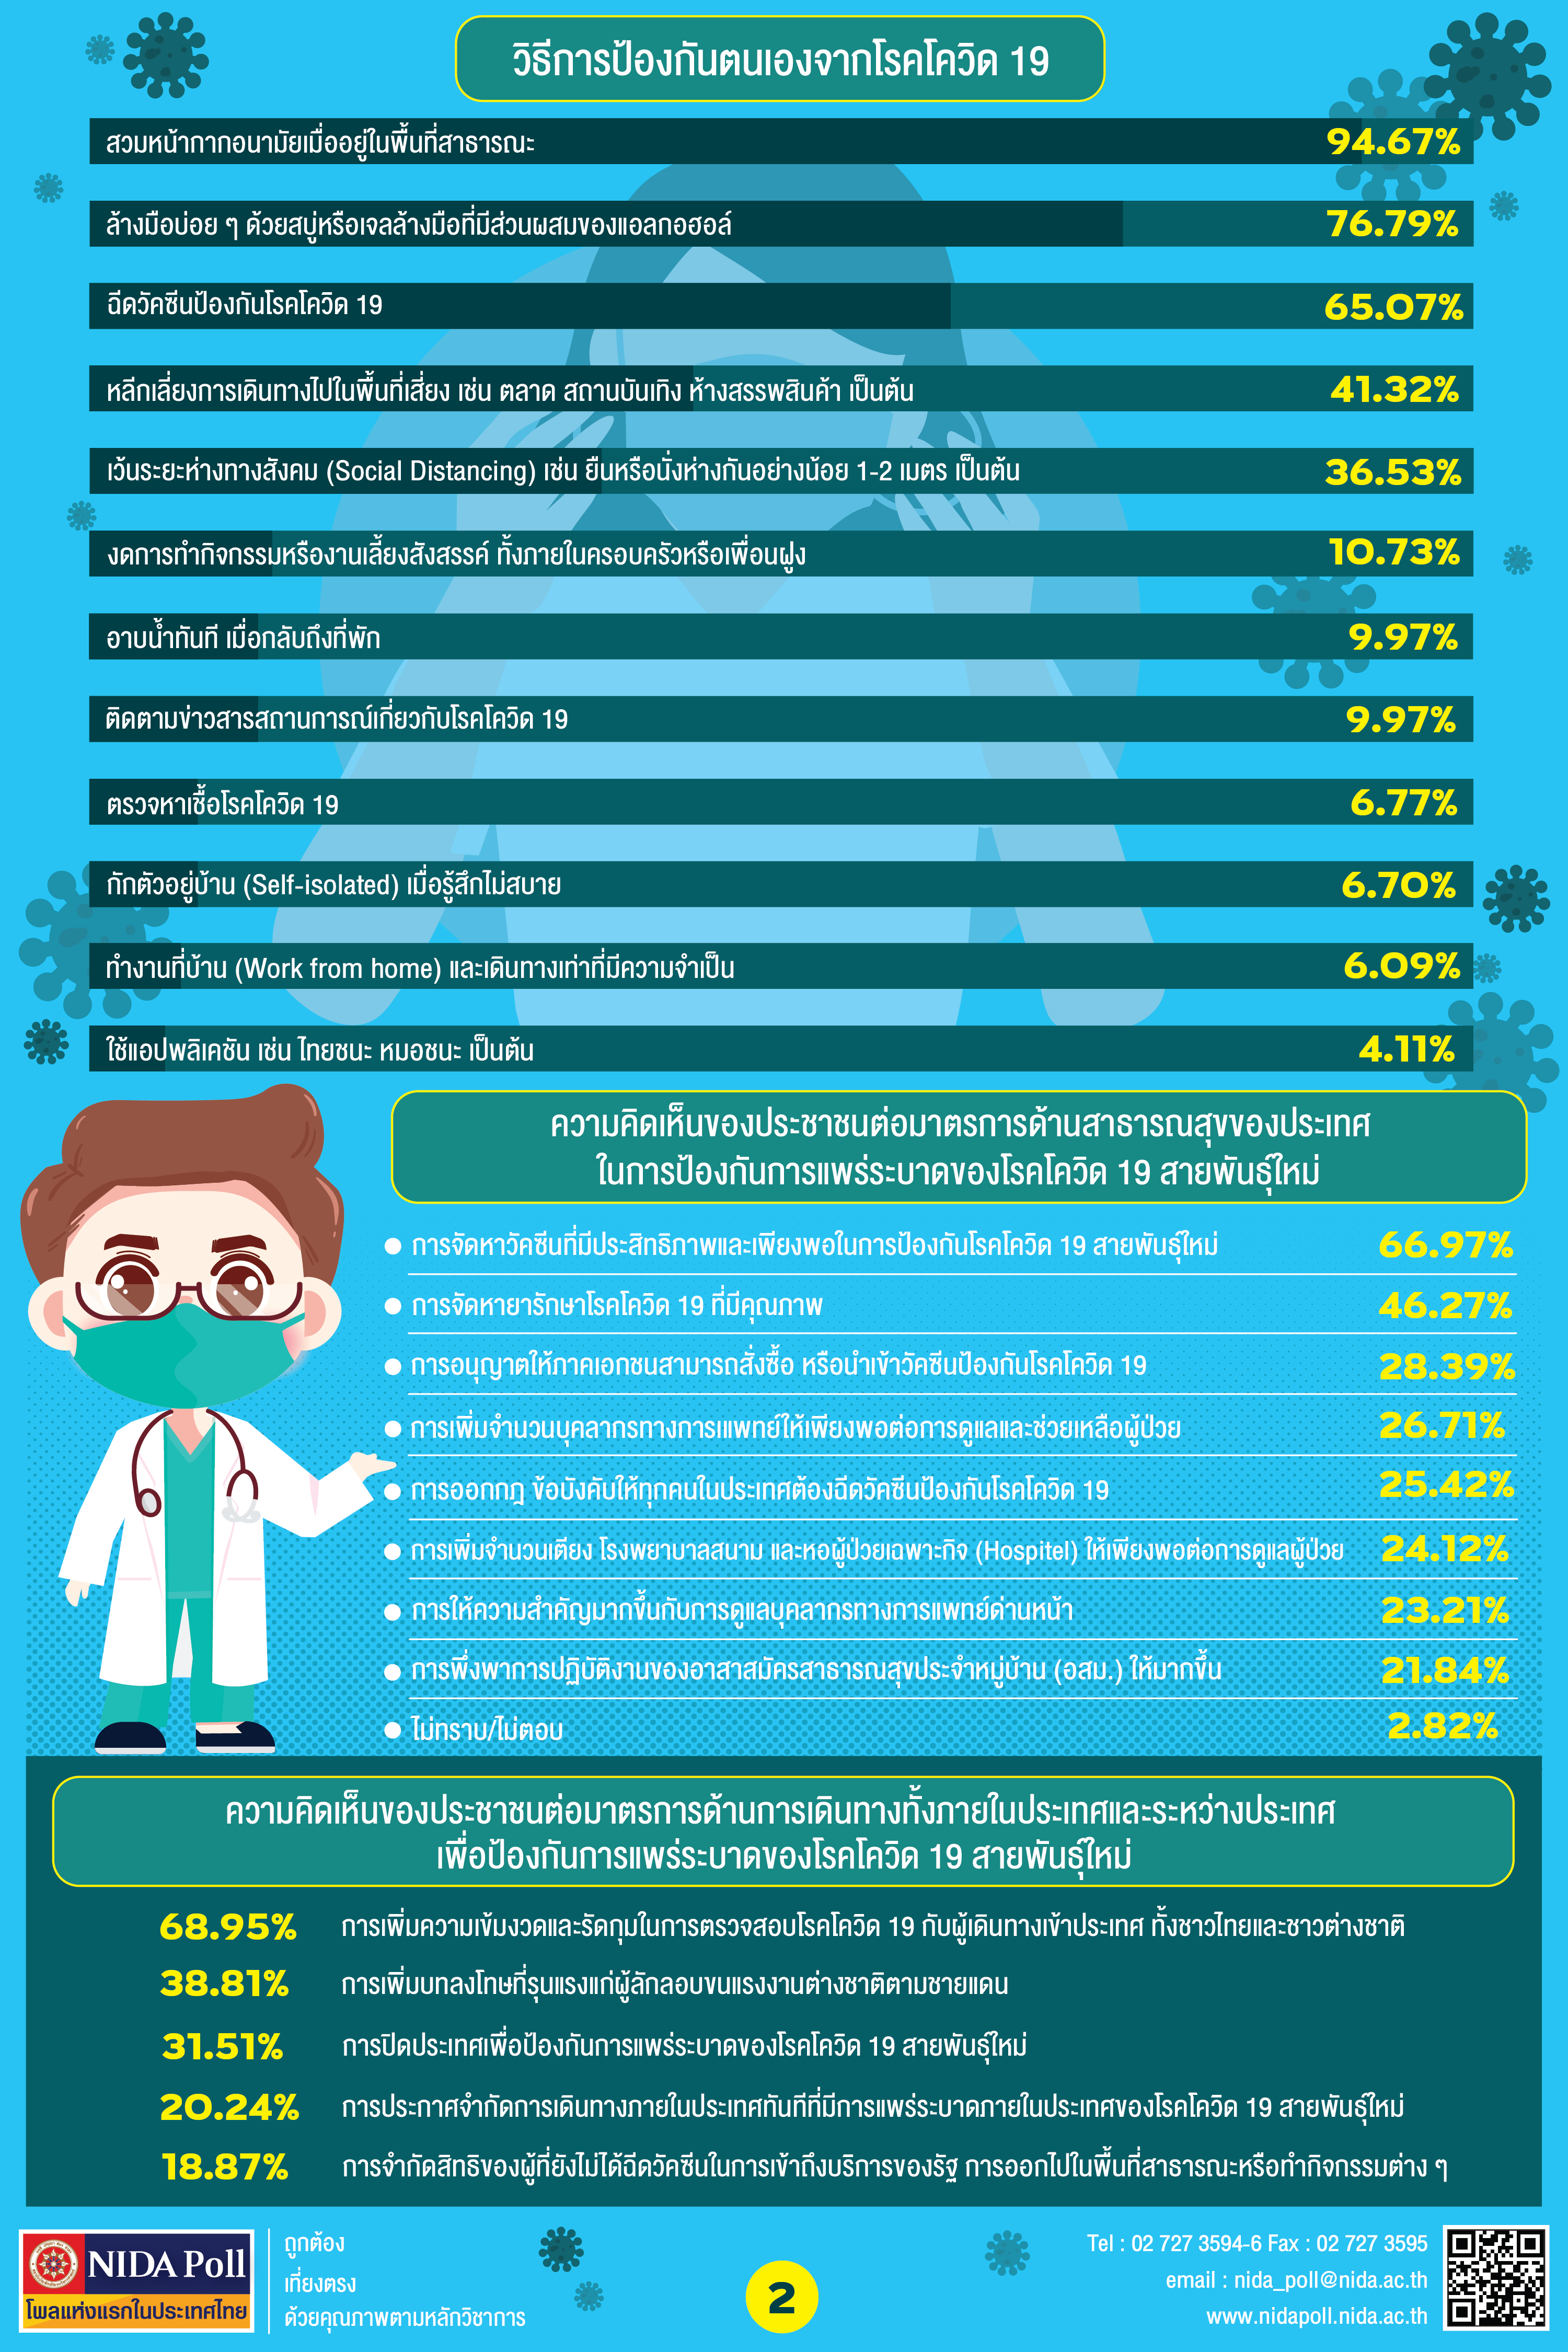 NIDA Poll ความเชื่อมั่นต่อระบบสาธารณสุขของประเทศไทยกับการรับมือโรคโควิด 19 สายพันธุ์ใหม่ 02